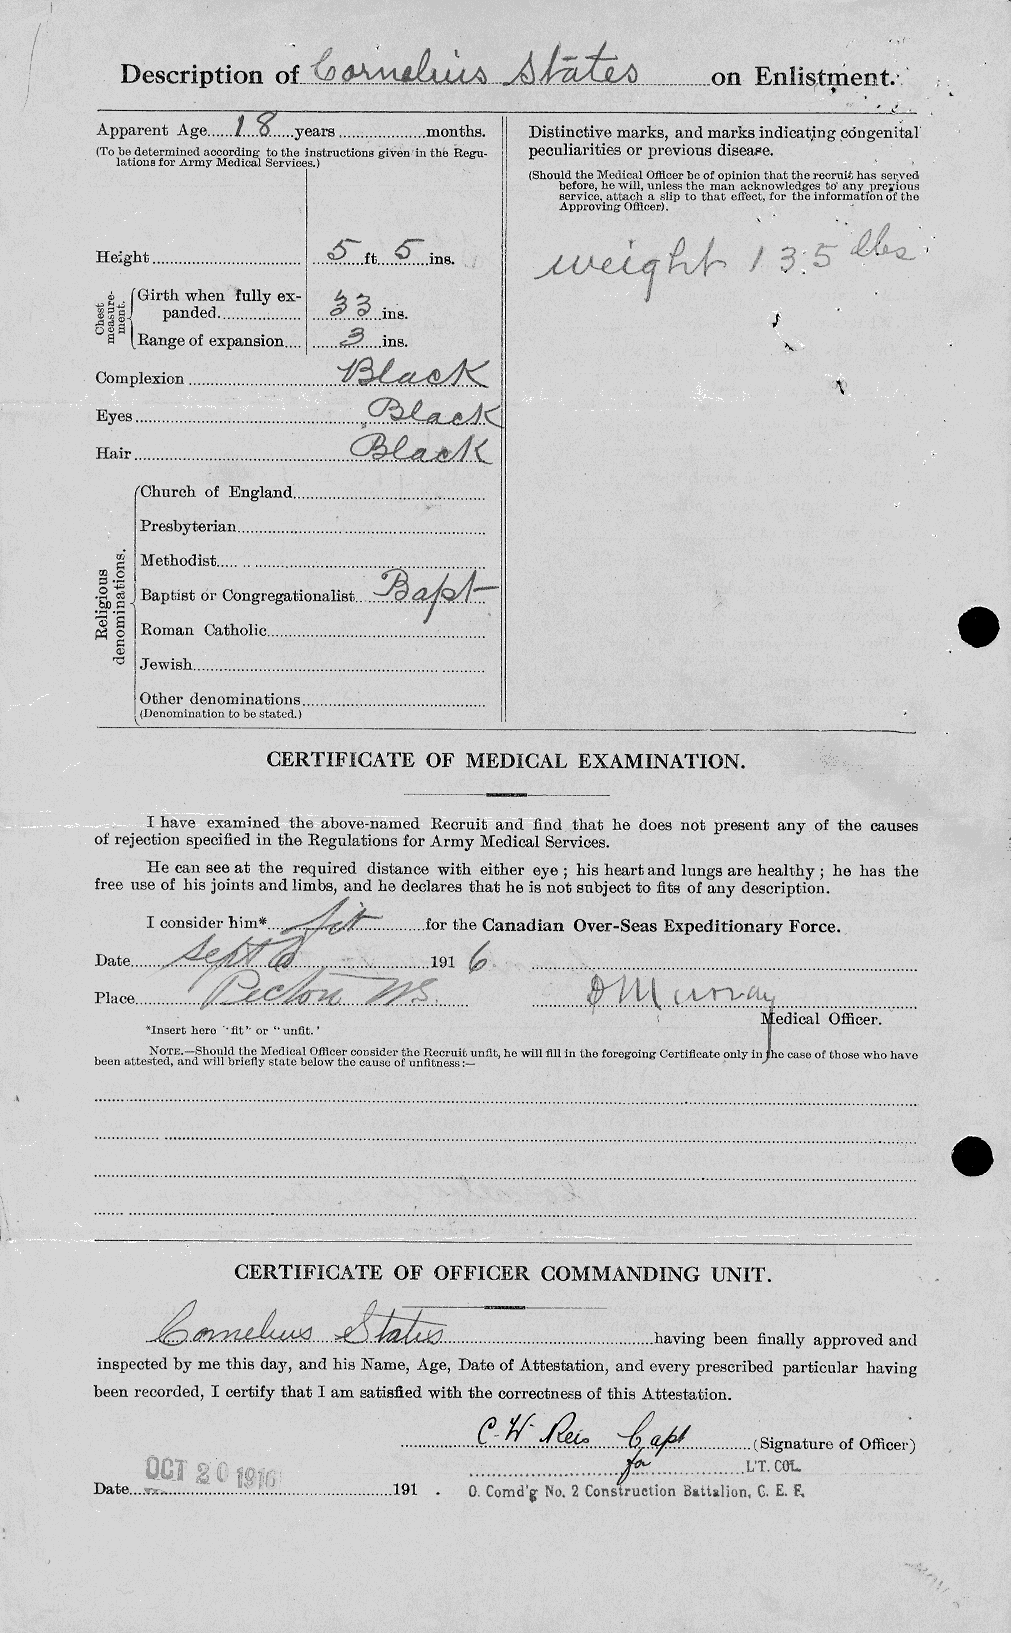 Dossiers du Personnel de la Première Guerre mondiale - CEC 116129b